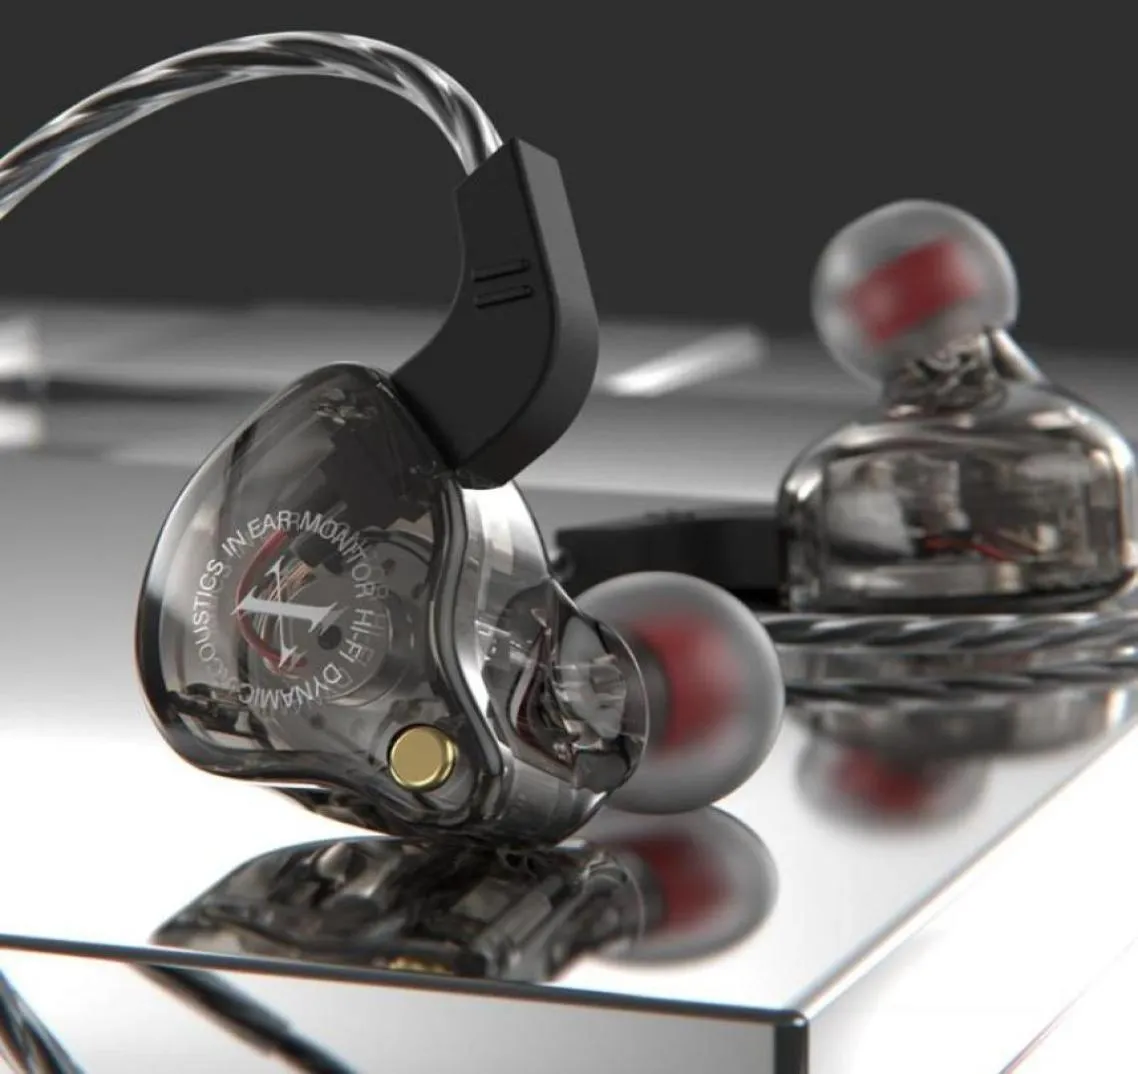 Słuchawki słuchawki fonge x2 inar sportowy hifi uniwersalny subwoofer przewodowy telefon komórkowy muzyka bezprzewodowa stereo sportowe słuchawki heA3003000